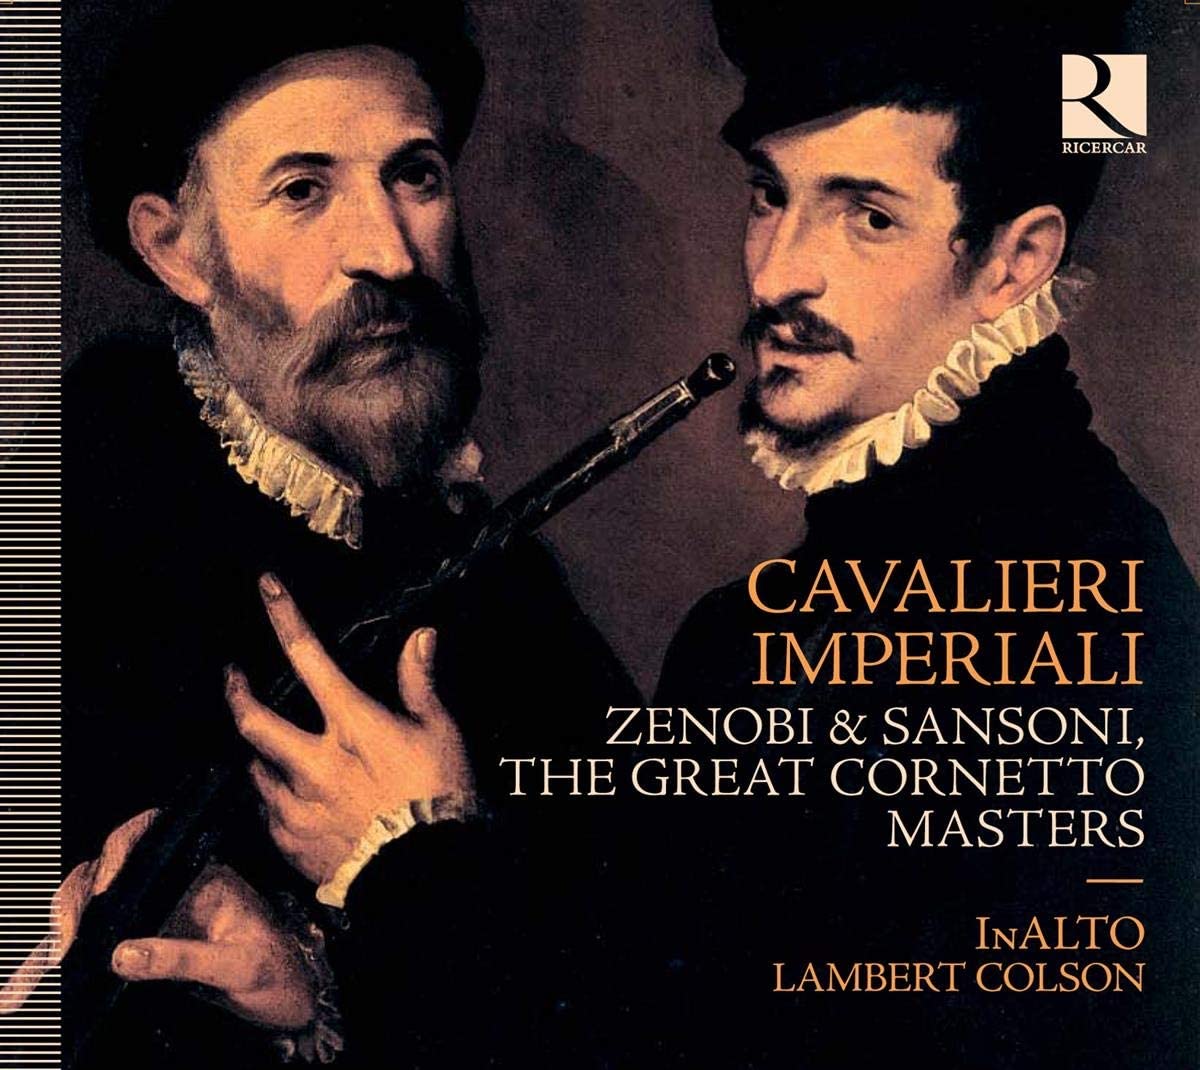 Lambert Colson CD cover of Cavalieri imperiali Cornetto virtuosi in Vienna